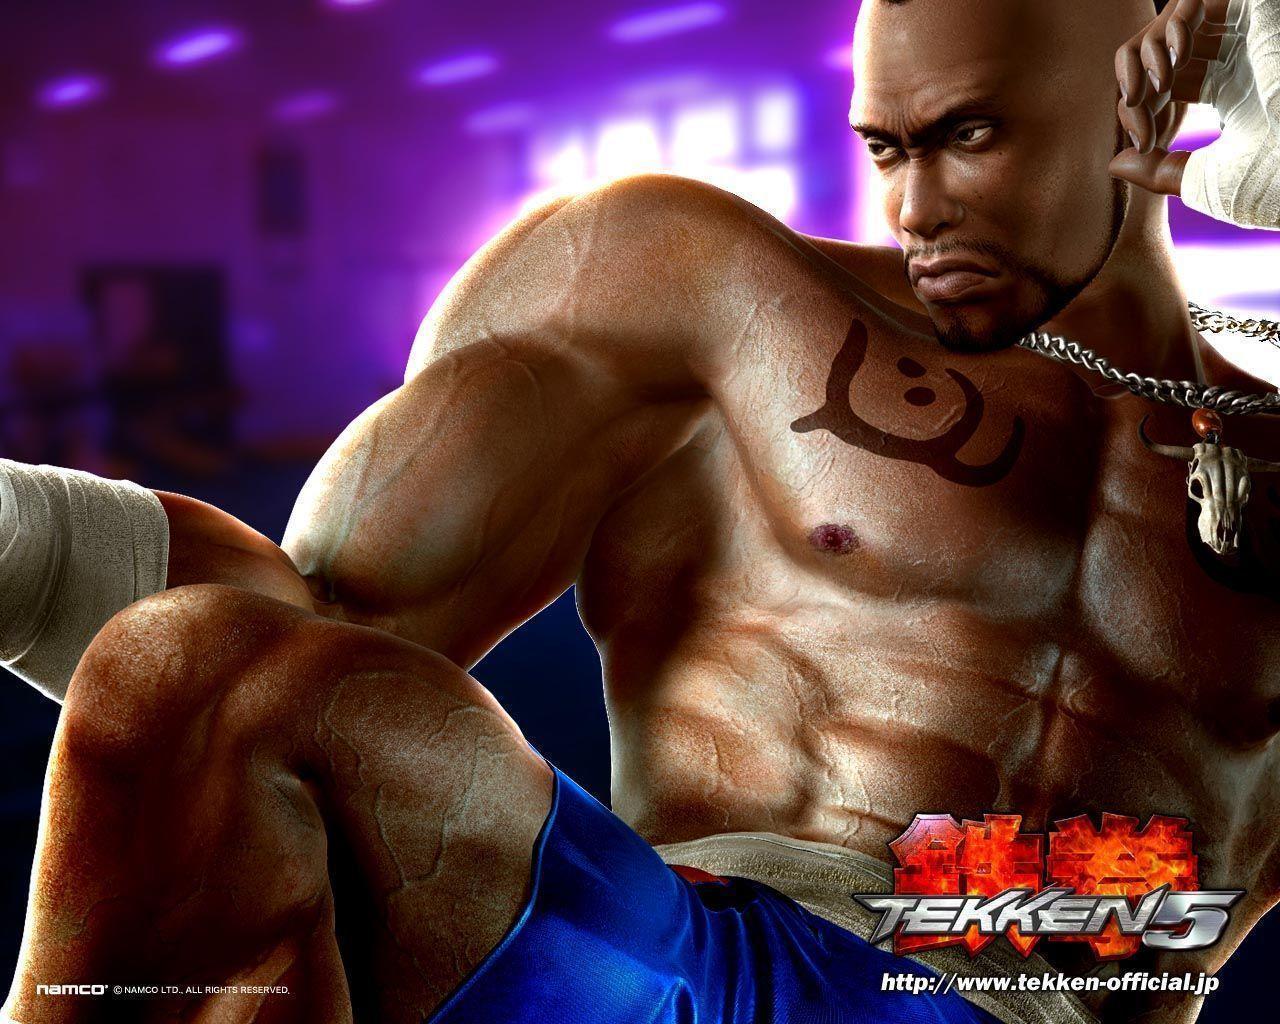 Check this out! our new Tekken 5 wallpaper. Tekken 5 wallpaper